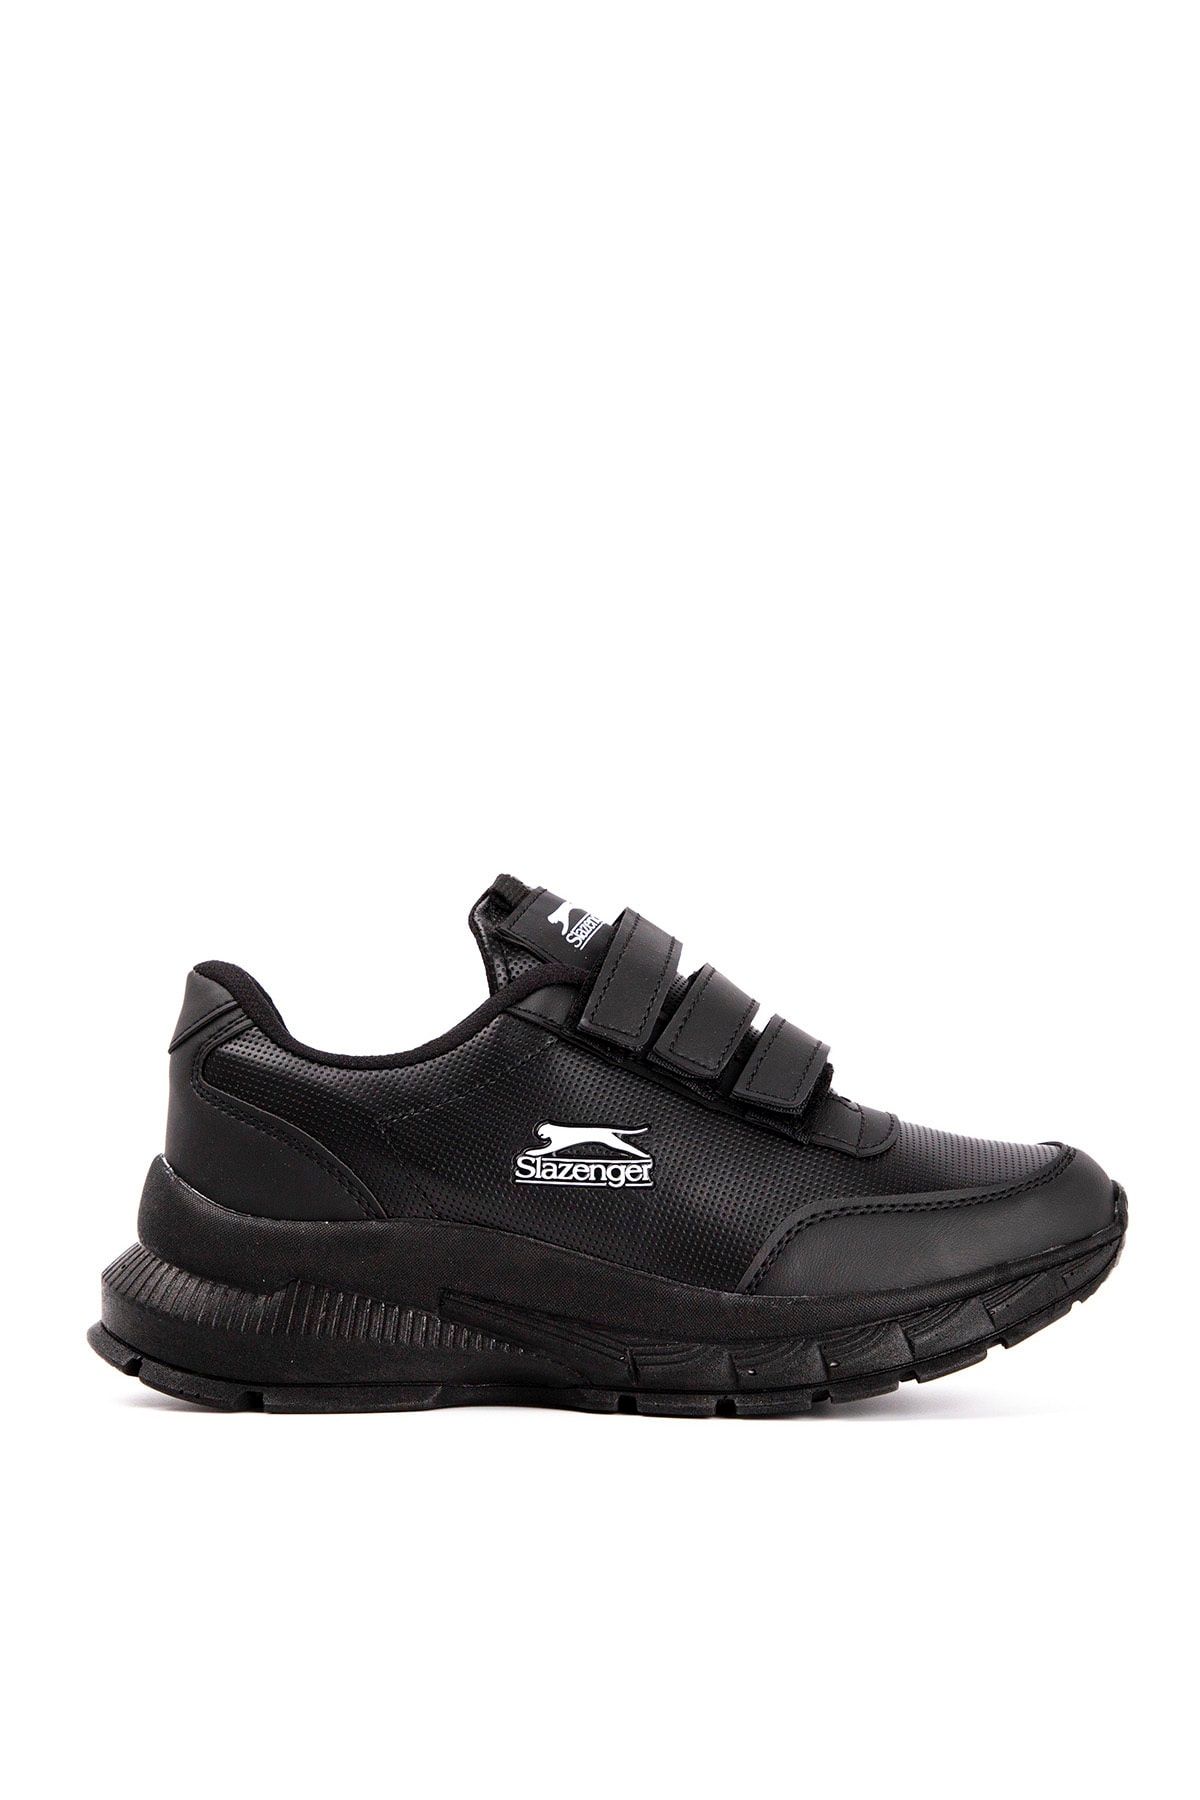 Slazenger Afrıca Sneaker Kadın Ayakkabı Siyah / Siyah Sa20lk007